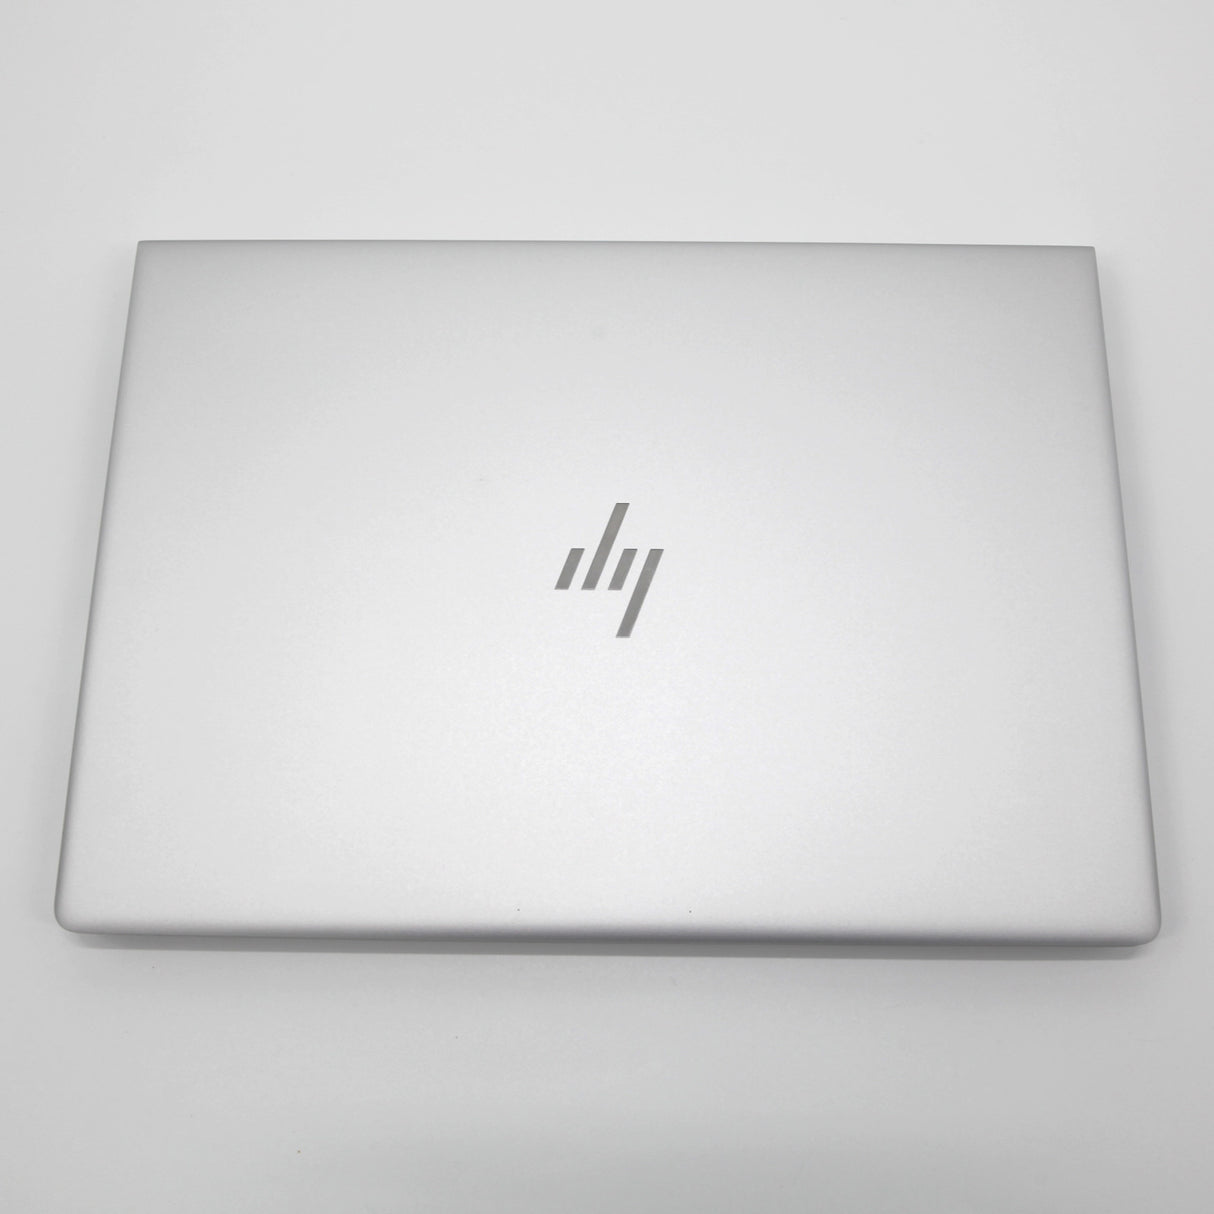 HP EliteBook 840 G6 14" Laptop: 512GB SSD, 16GB RAM, 8th Gen Core i5, Warranty - GreenGreenStoreUK